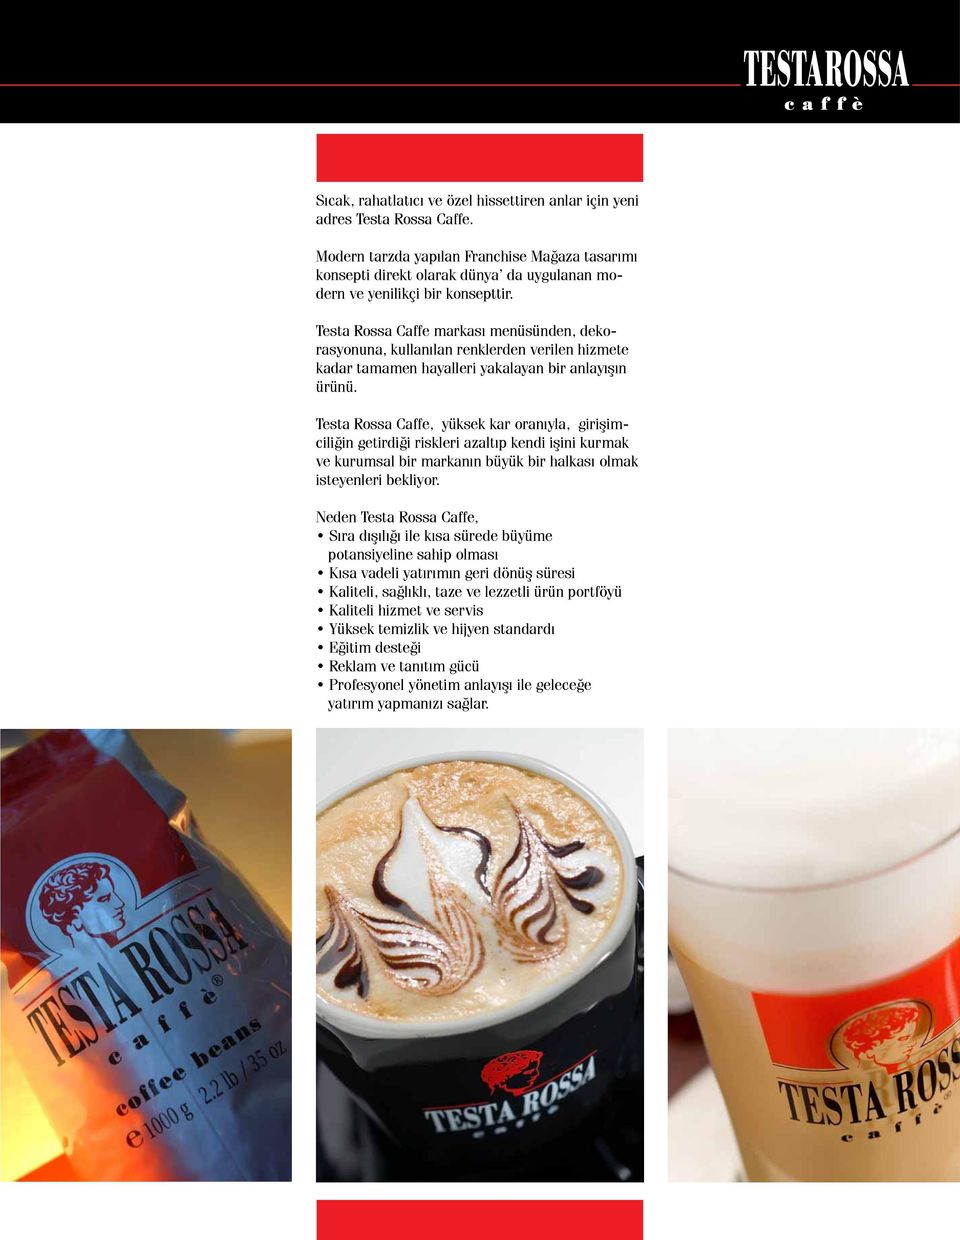 Testa Rossa Caffe markası menüsünden, dekorasyonuna, kullanılan renklerden verilen hizmete kadar tamamen hayalleri yakalayan bir anlayışın ürünü.